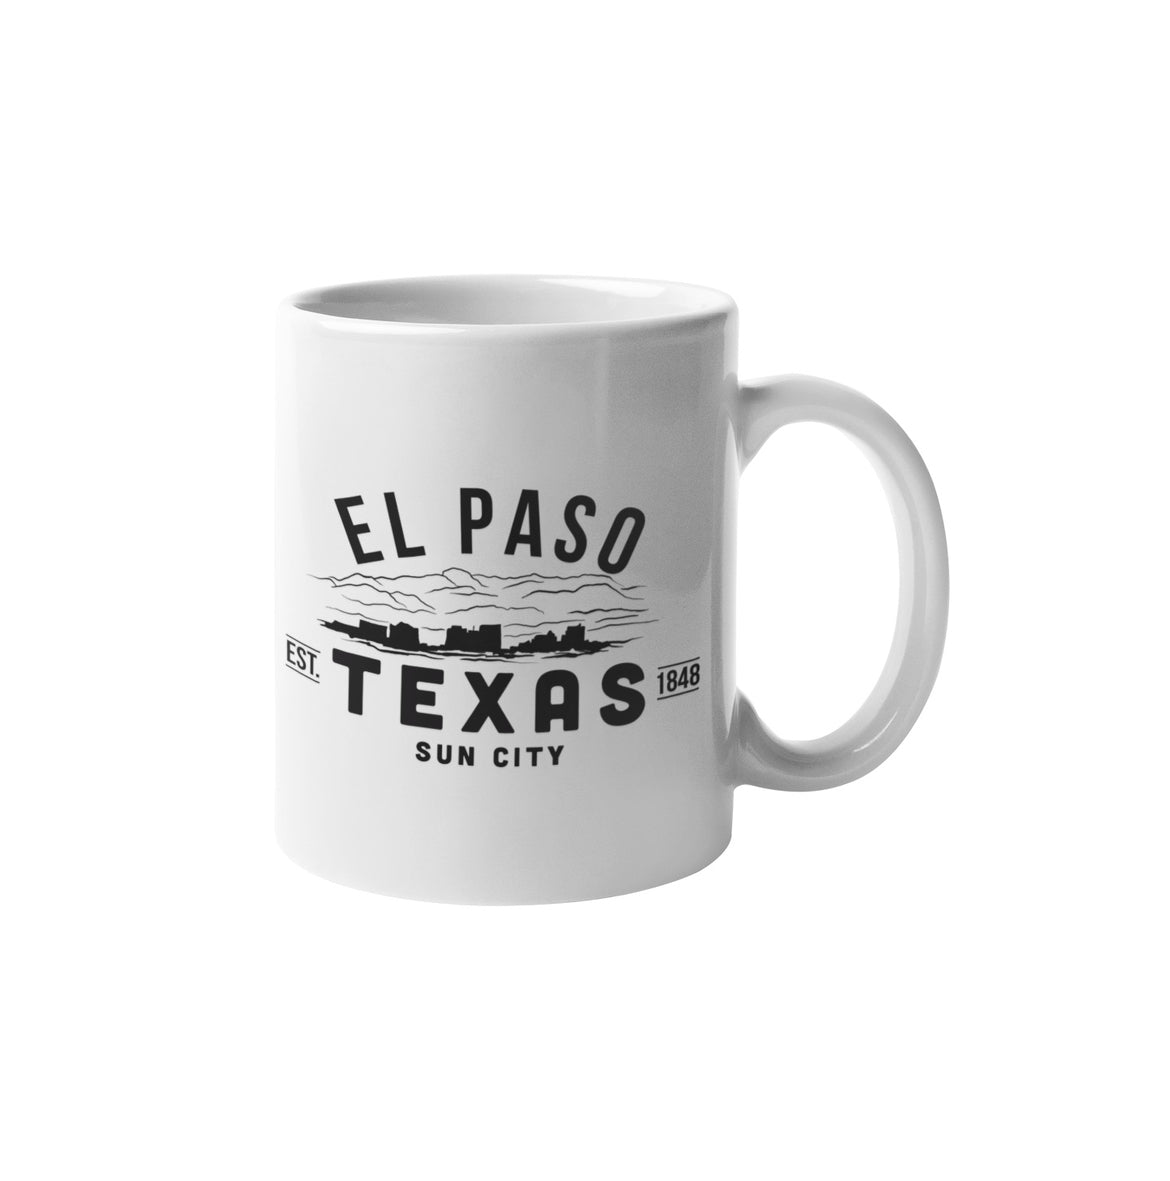 El Paso Texas Mug